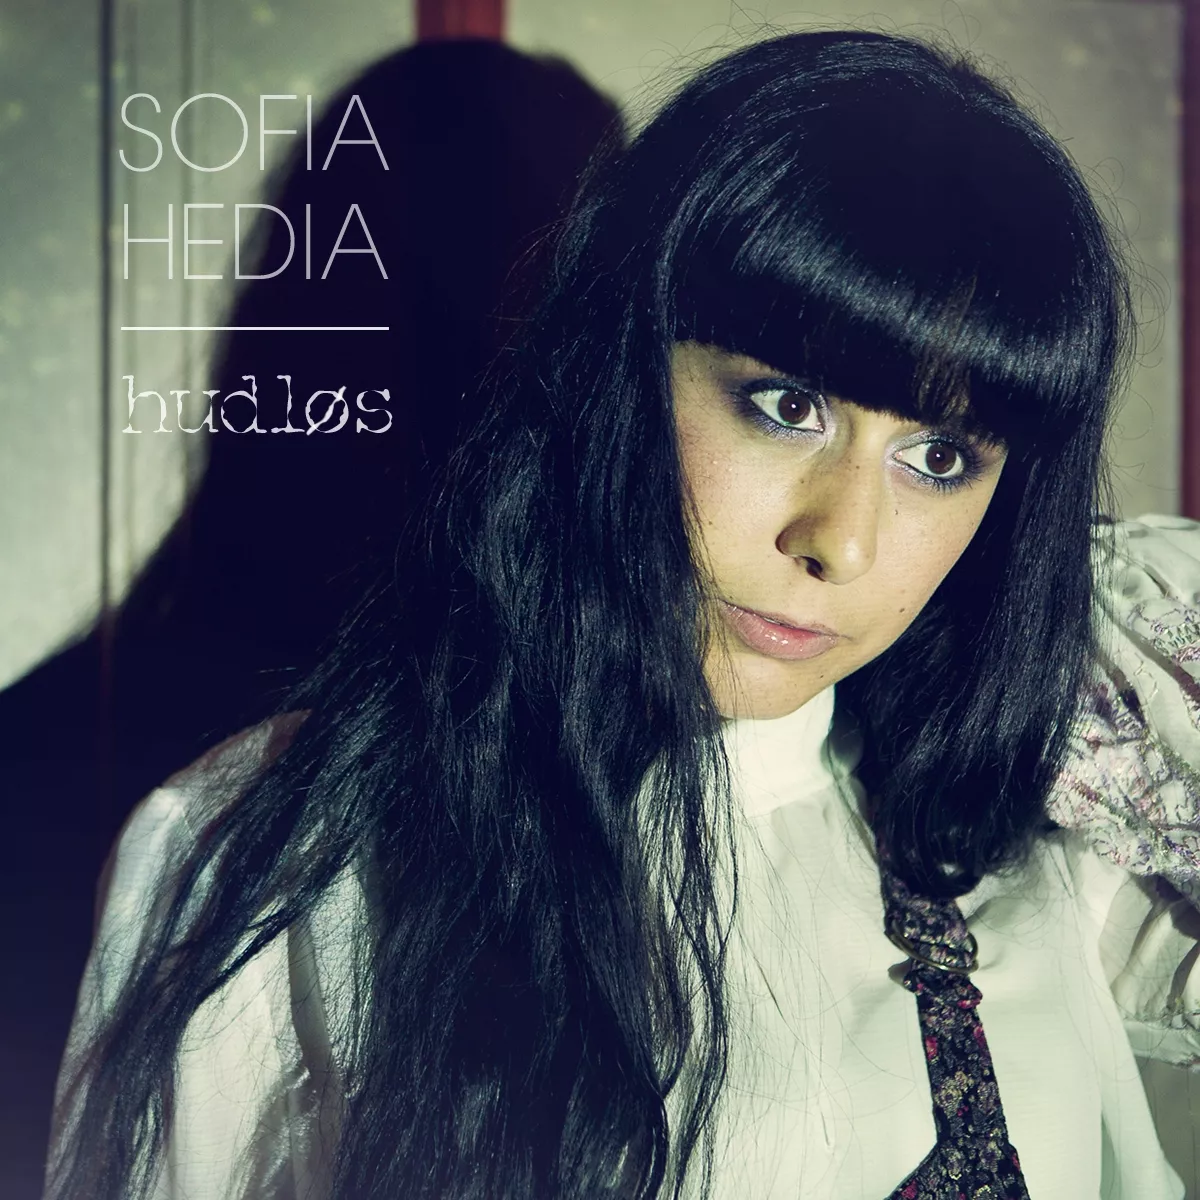 Hudløs - Sofia Hedia